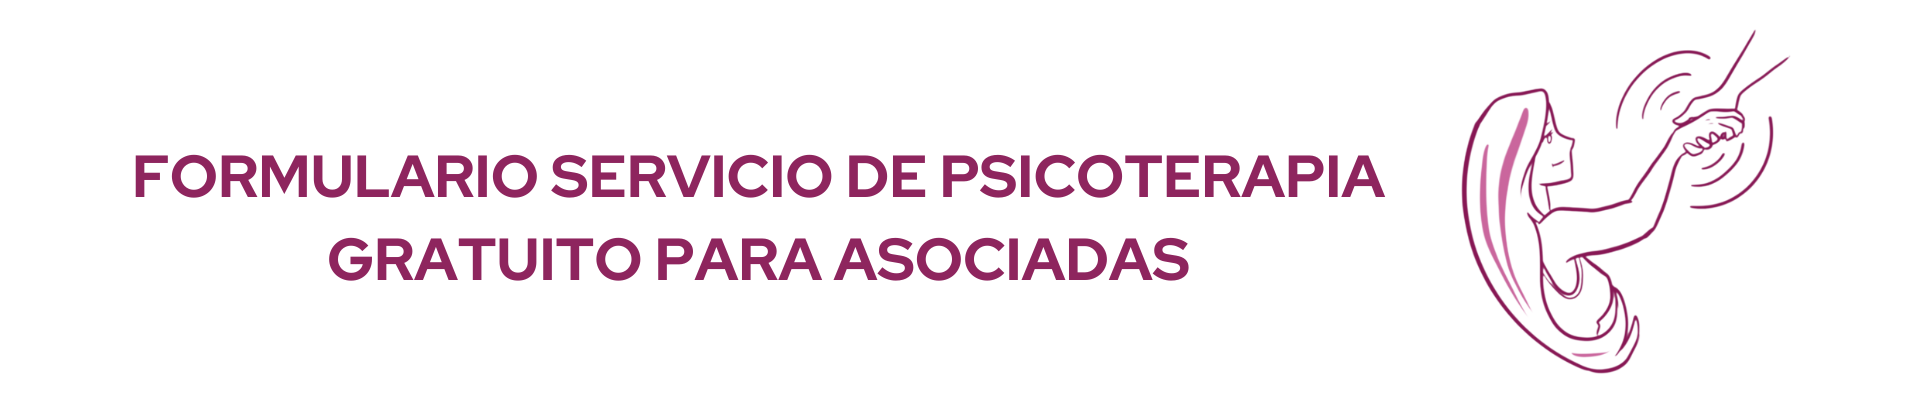 FORMULARIO SERVICIO DE PSICOTERAPIA GRATUITO PARA ASOCIADAS (1)